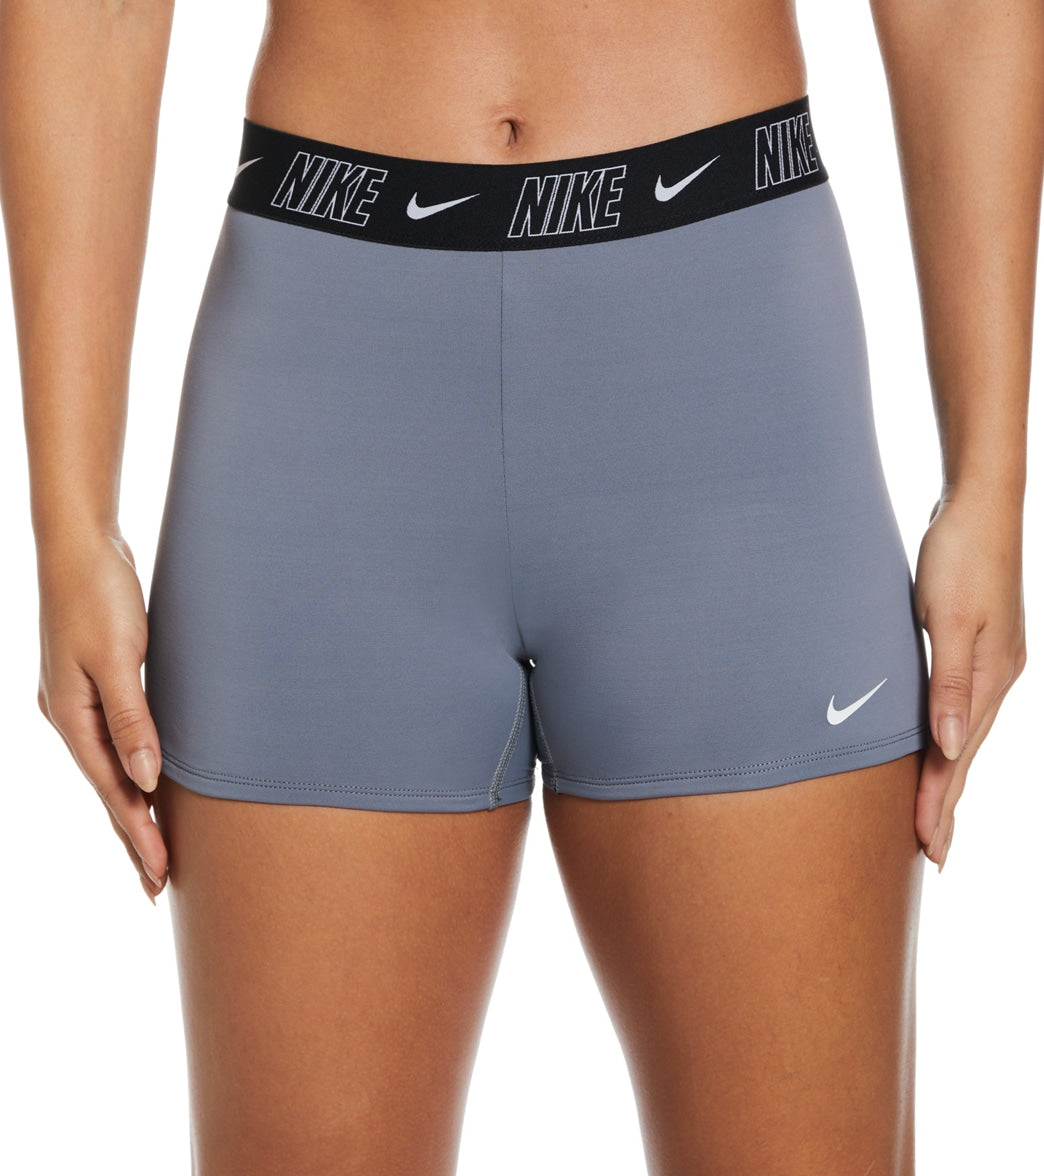 Nike Women's Kick Short Bikini Bottom at SwimOutlet.com